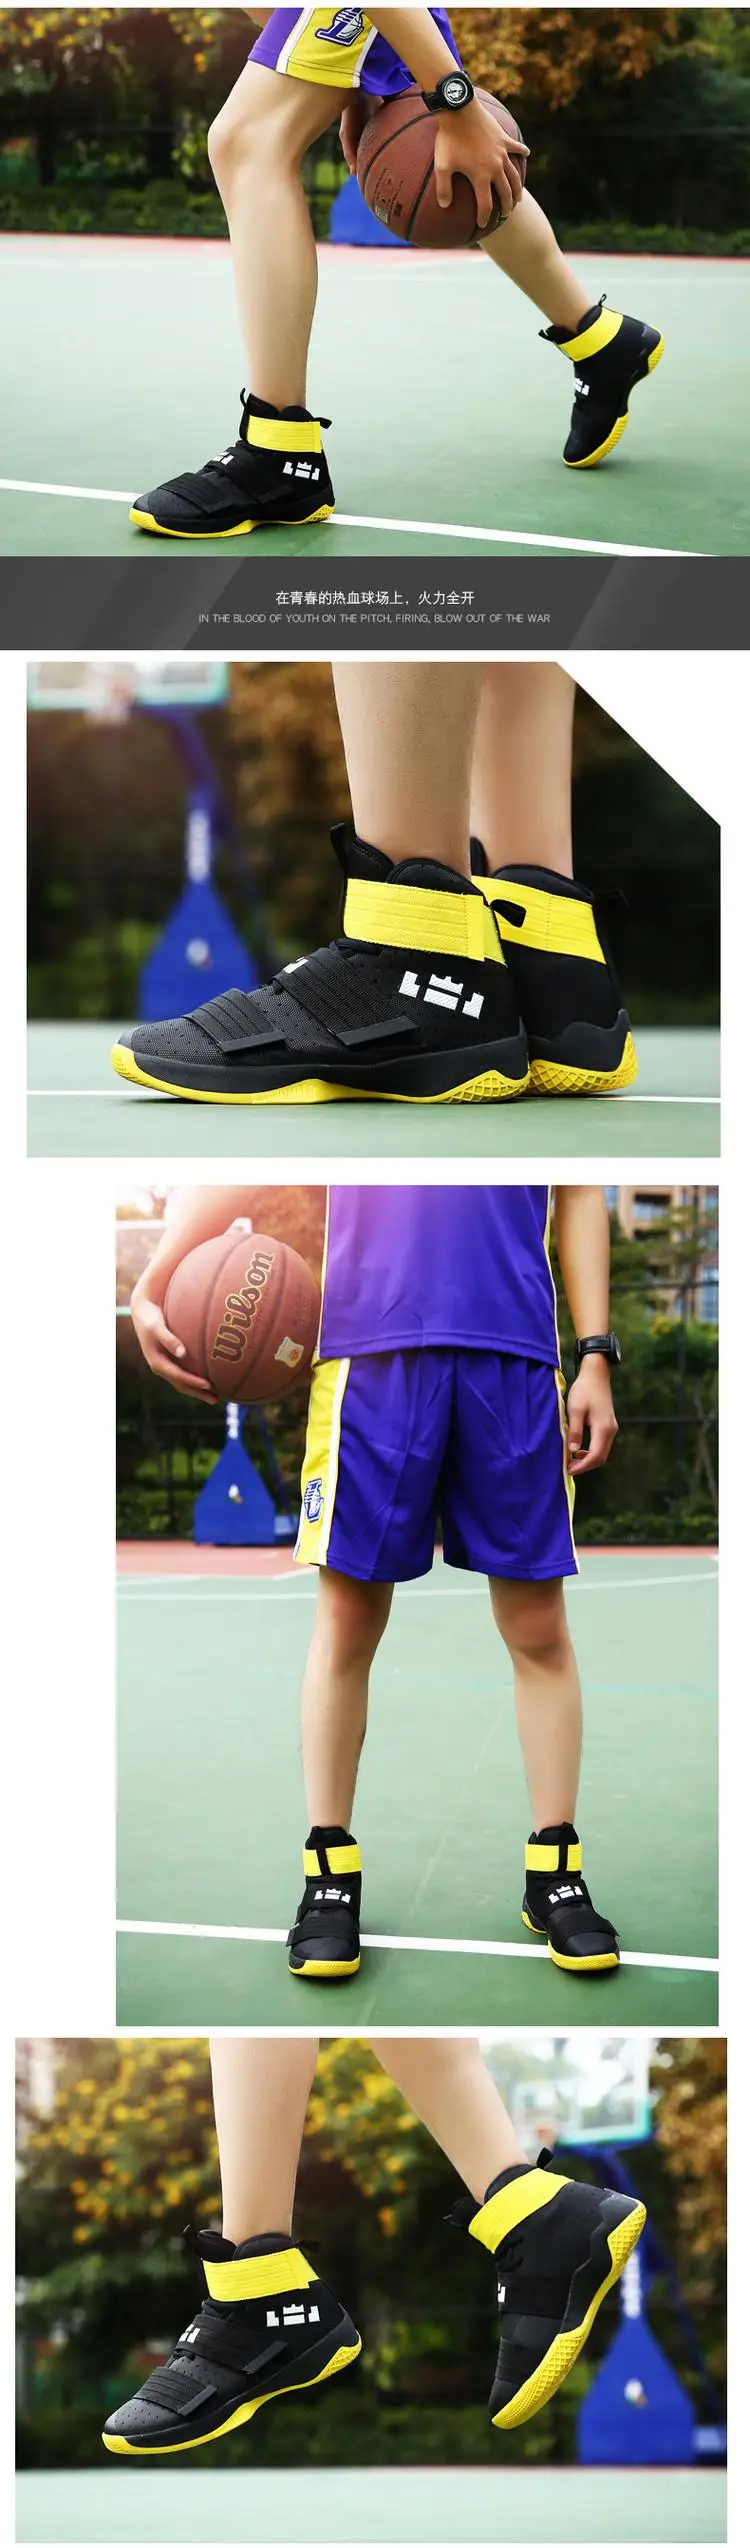 Большие размеры 45 Ретро Bakset Homme 2018 Горячая брендовая мужская баскетбольная обувь кроссовки мужские s спортивная обувь мужские Jordan обувь